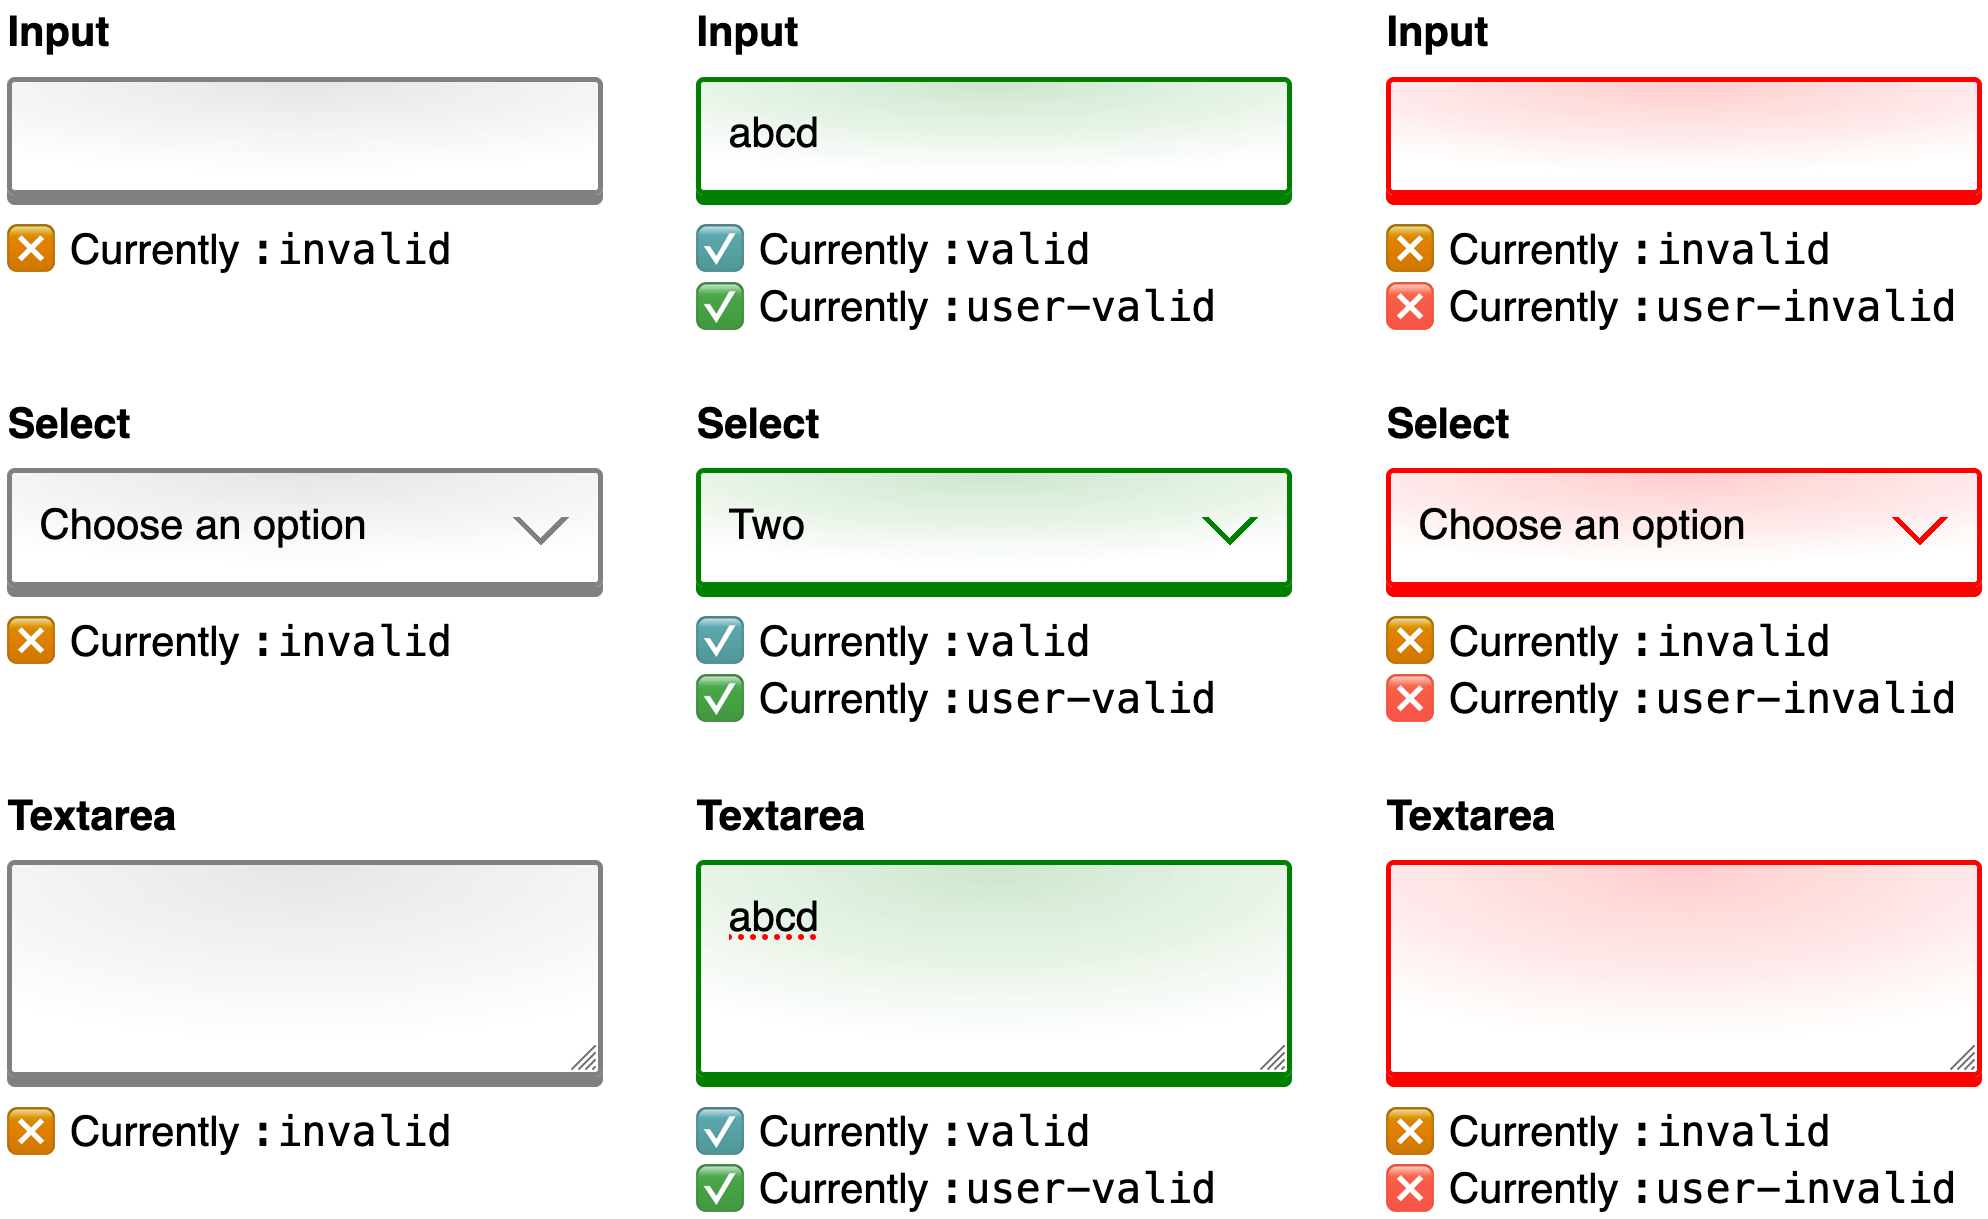 Gambar yang menggabungkan 3 screenshot secara berdampingan untuk dibandingkan. Setiap screenshot menampilkan formulir web dengan kontrol input, select, dan textarea yang sama. Screenshot pertama menampilkan formulir dalam status awal sebelum input pengguna. Batas kontrol berwarna abu-abu dan teks bantuan di bawah ini menjelaskan bahwa setiap kontrol saat ini akan cocok dengan pemilih kelas semu :invalid. Screenshot kedua menampilkan formulir yang sama setelah pengguna memberikan input untuk setiap kontrol. Batas kontrol berwarna hijau dan teks bantuan di bawah menjelaskan bahwa setiap kontrol saat ini akan cocok dengan pemilih kelas semu :valid dan :user-valid. Screenshot ketiga dan terakhir menampilkan formulir yang sama setelah pengguna menghapus semua input mereka. Batas kontrol berwarna merah dan teks bantuan di bawah ini menjelaskan bahwa setiap kontrol saat ini akan cocok dengan pemilih kelas semu :invalid dan :user-invalid.